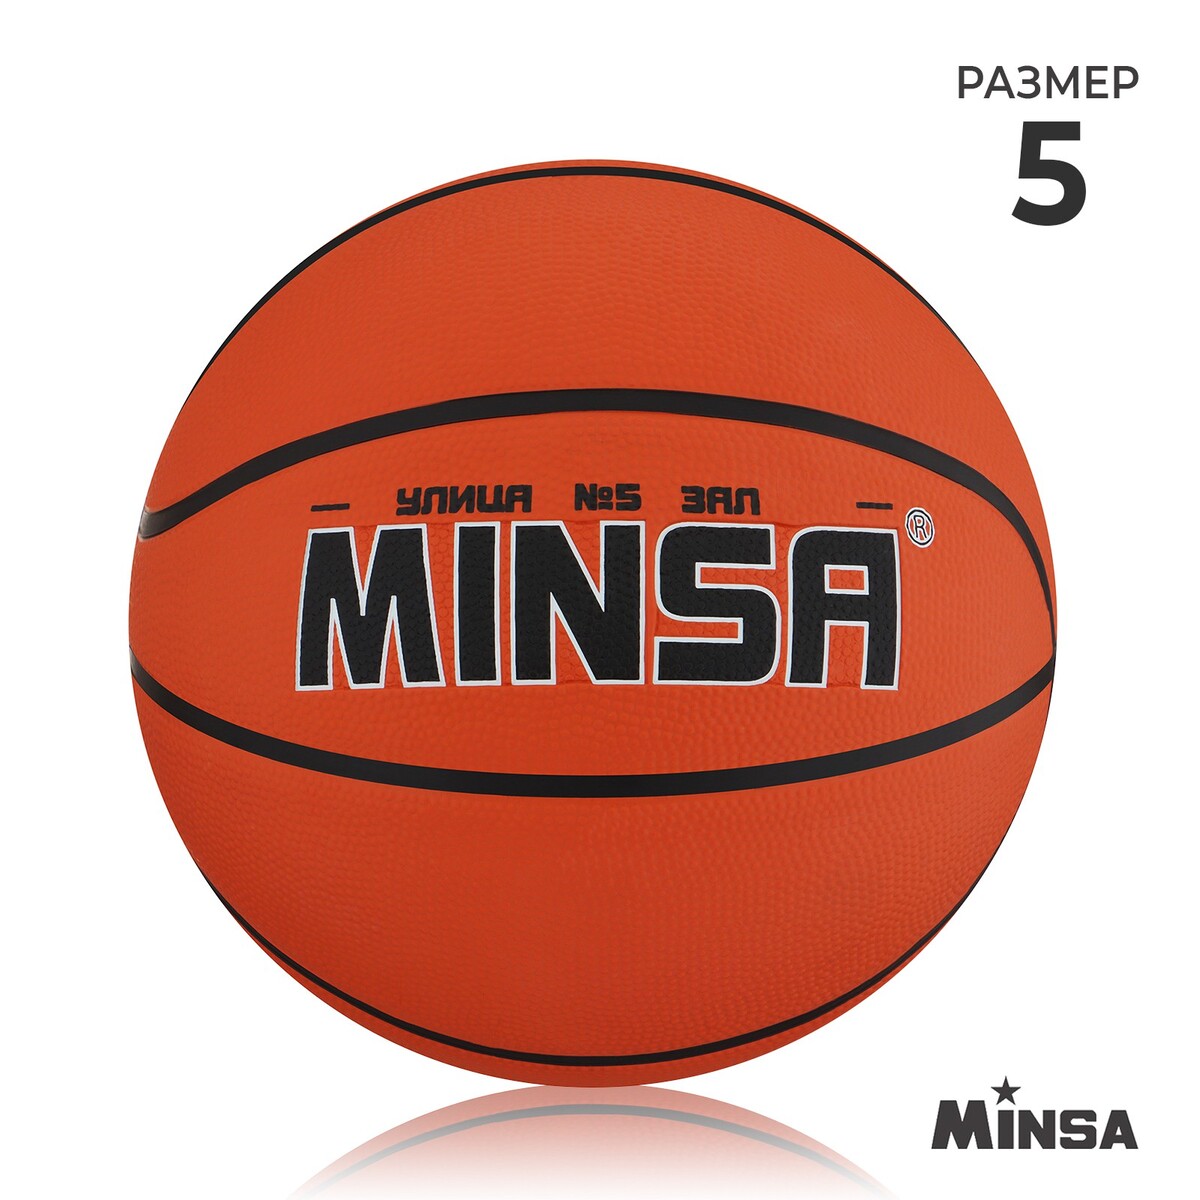 Мяч баскетбольный minsa, пвх, клееный, 8 панелей, р. 5 баскетбольный мяч minsa тренировочный pu клееный 8 панелей р 7